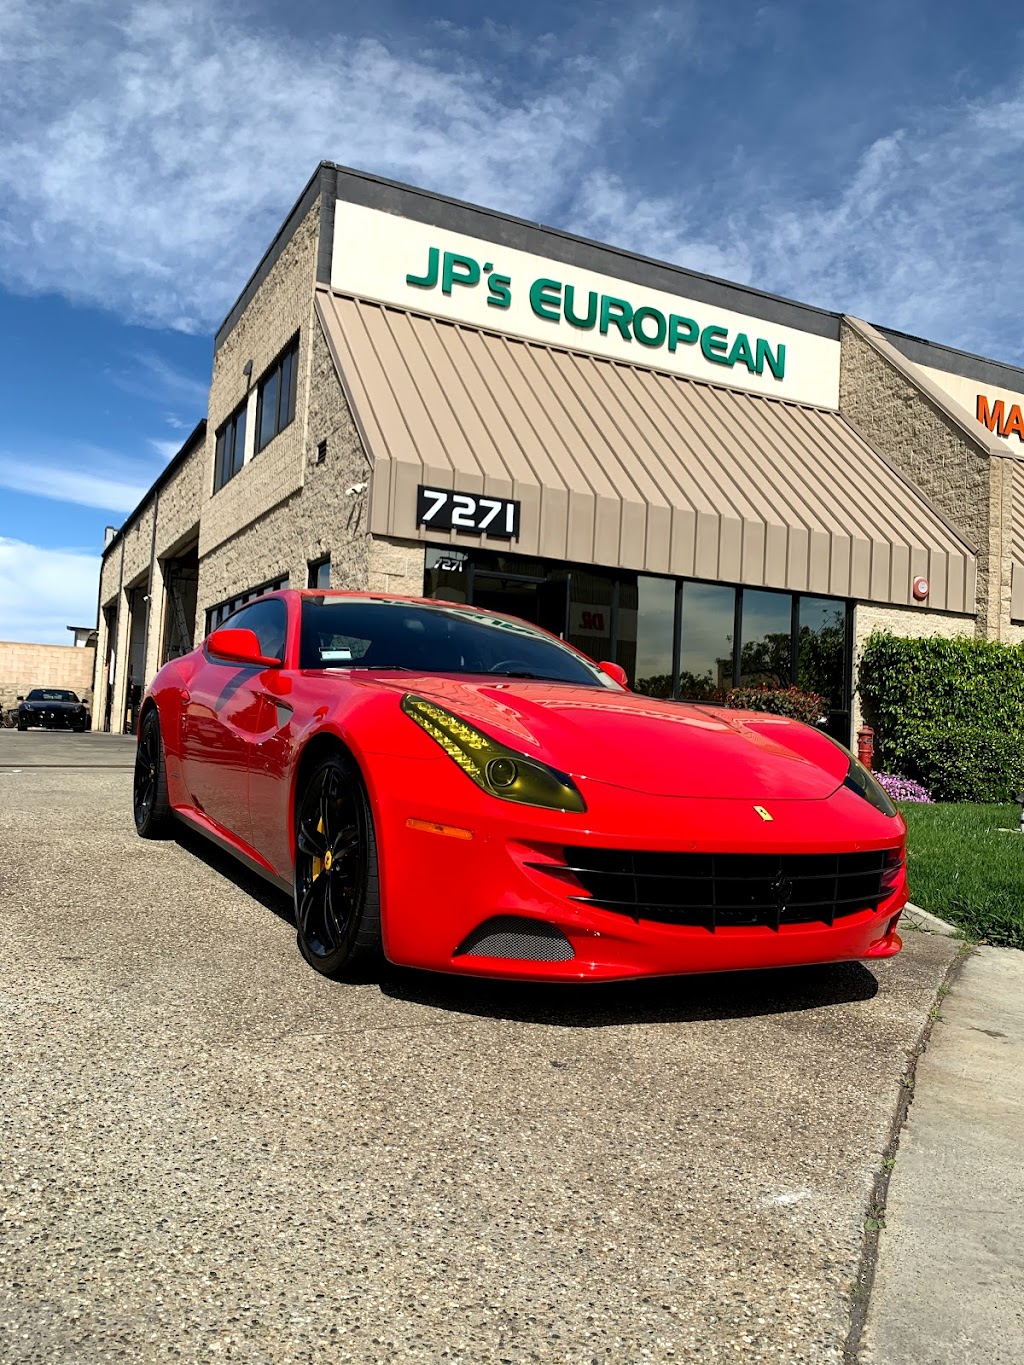 JPs European Auto, Inc | 7271 Autopark Dr, Huntington Beach, CA 92648, USA | Phone: (714) 848-3876